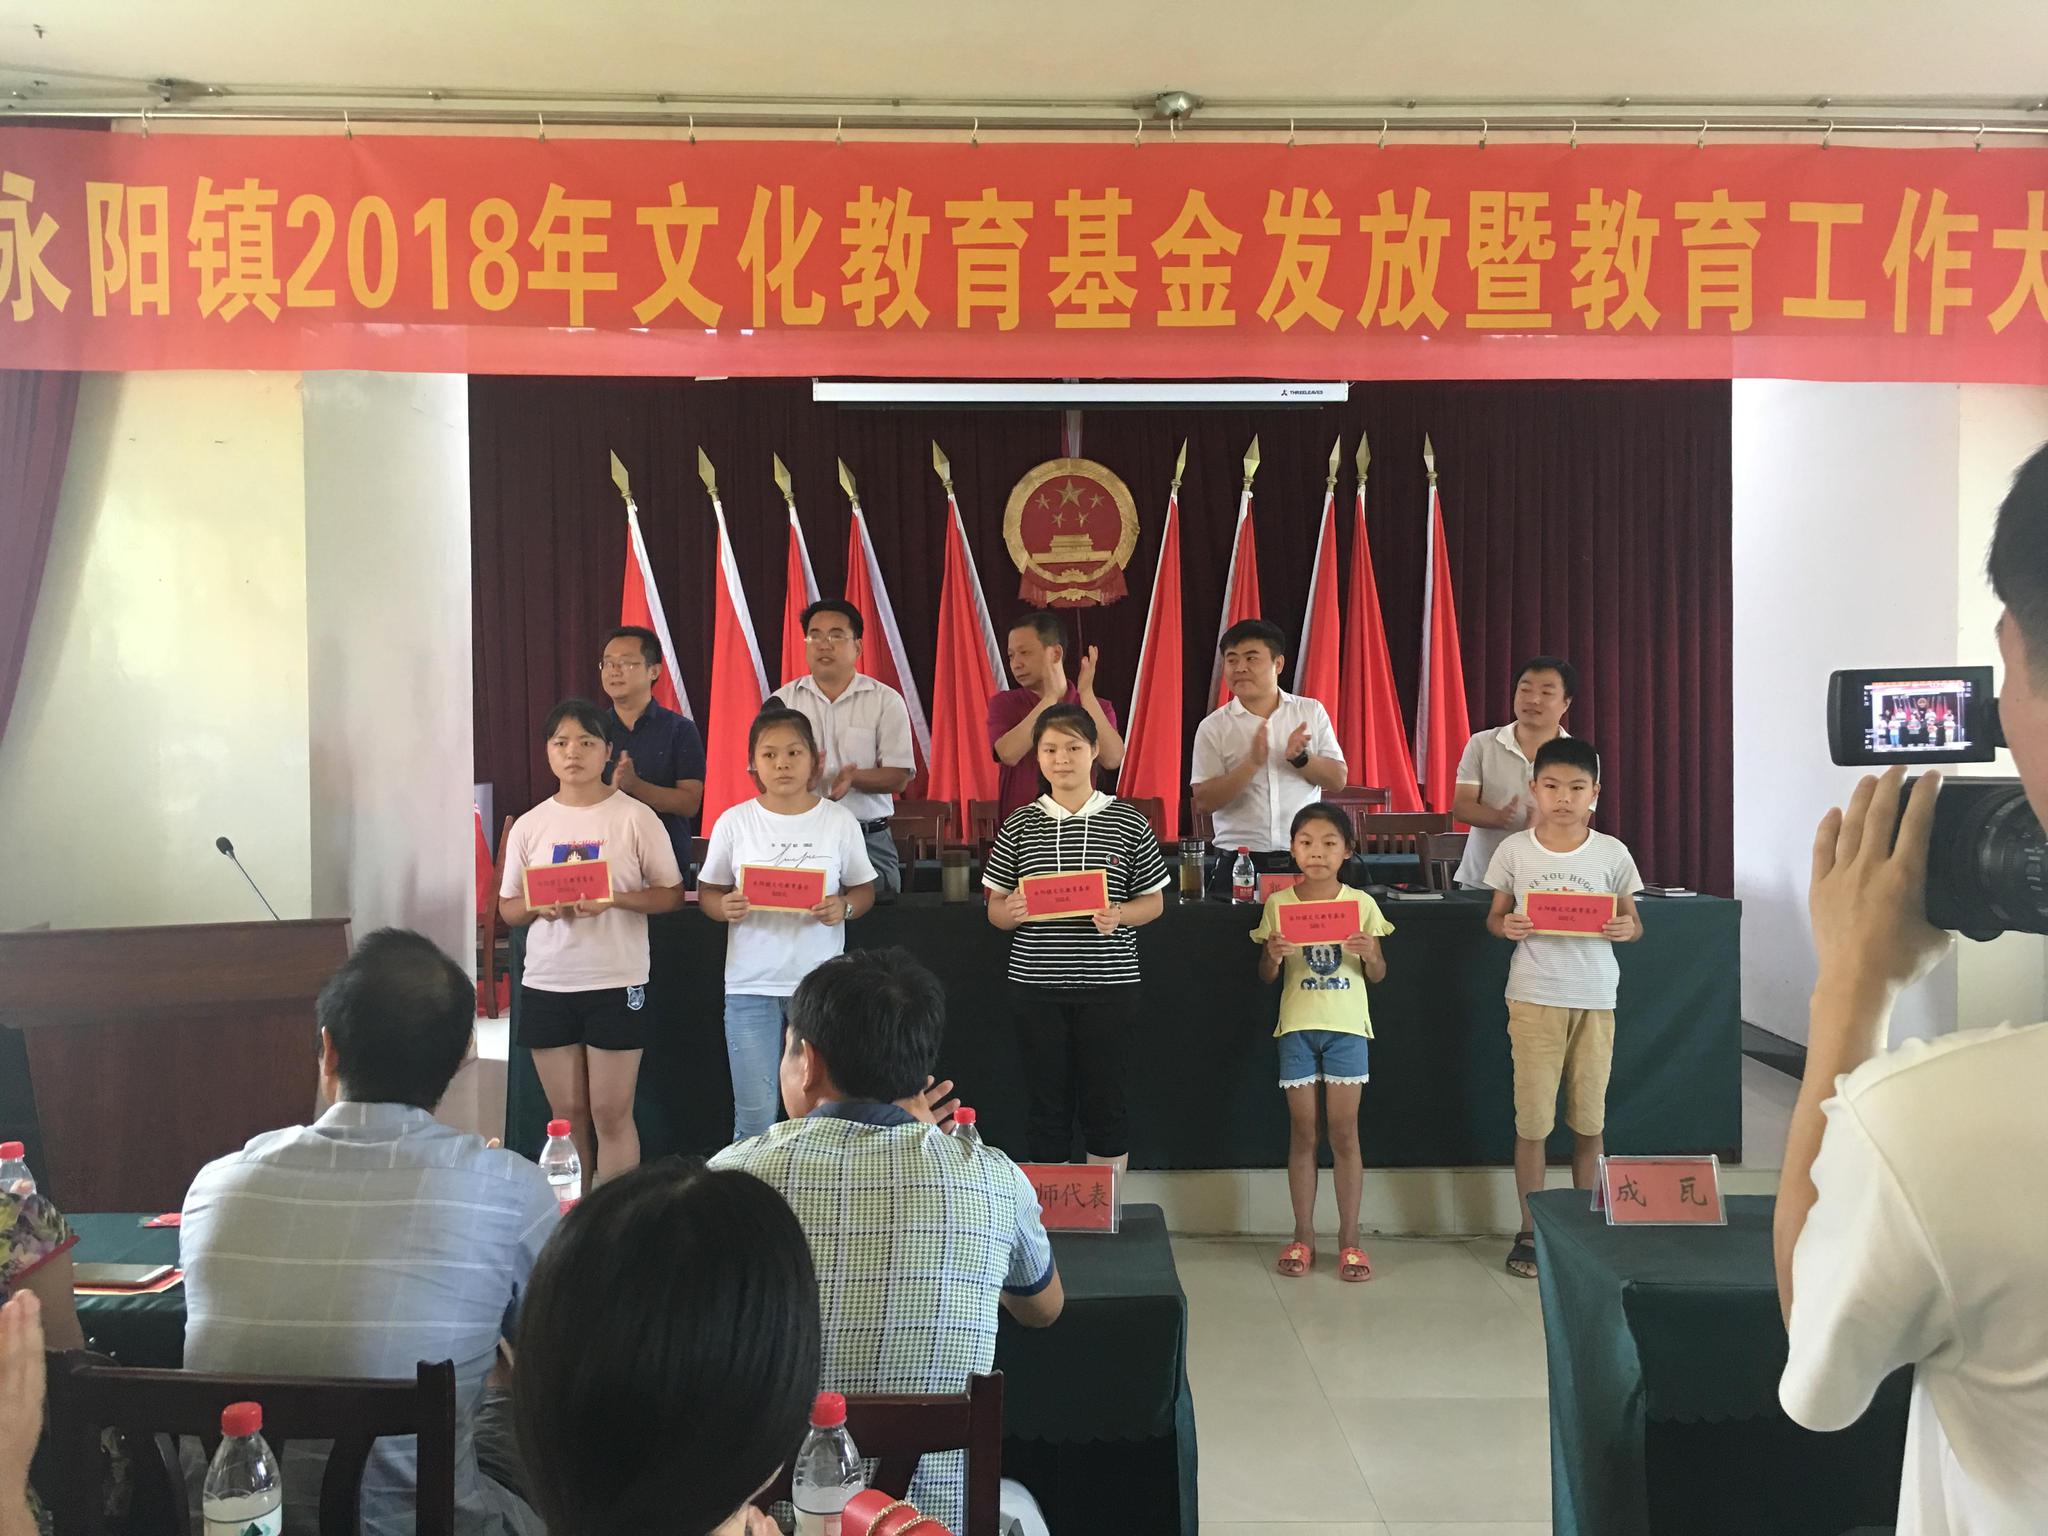 吉安县永阳镇举行2018年文化教育基金发放仪